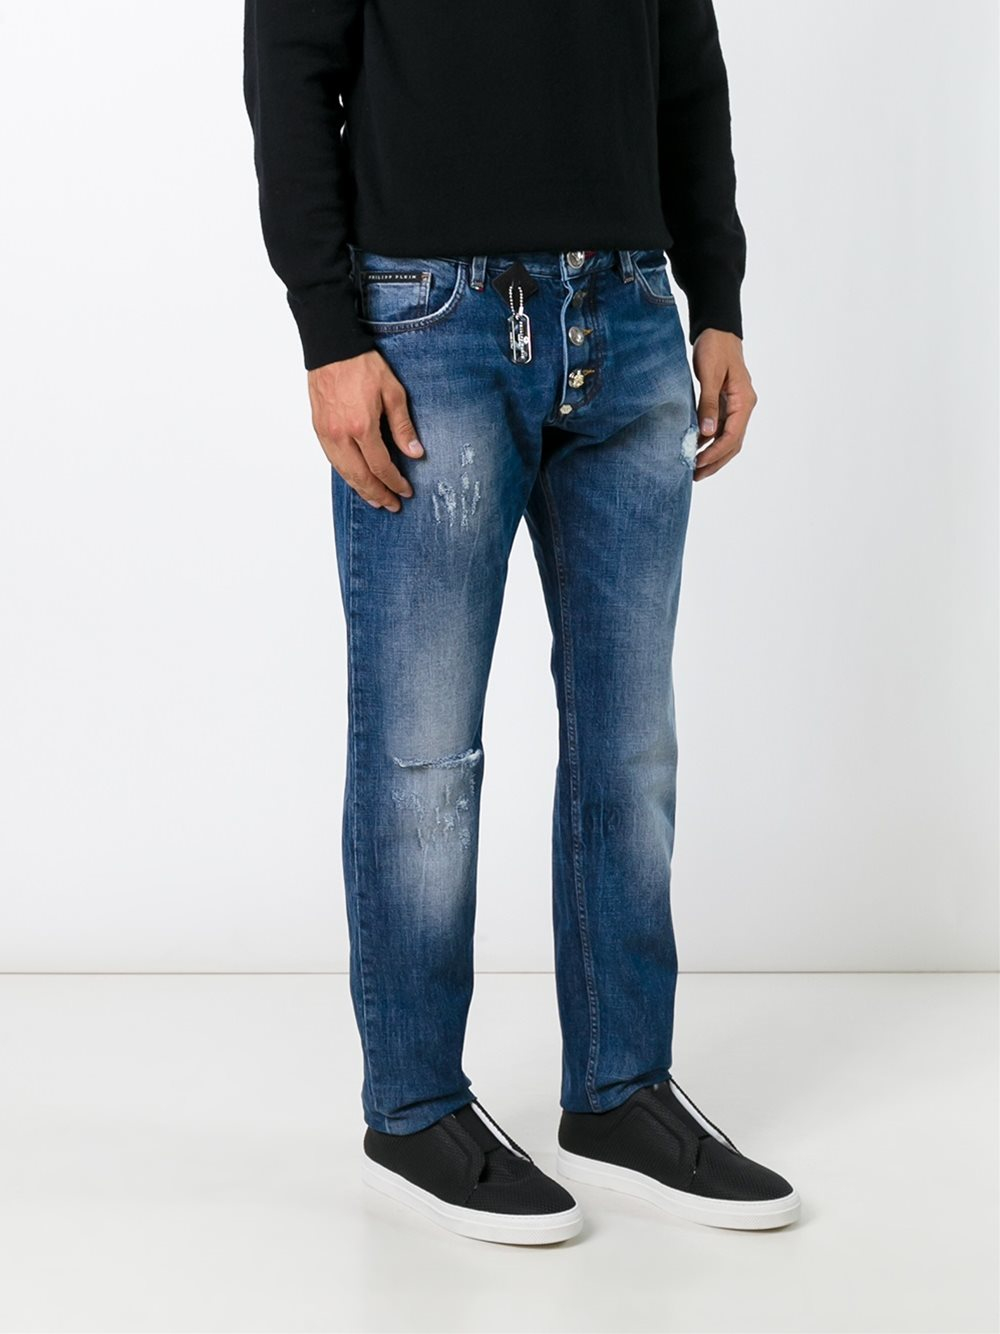 Lyst - Philipp Plein Straight-leg Jeans in Blue for Men